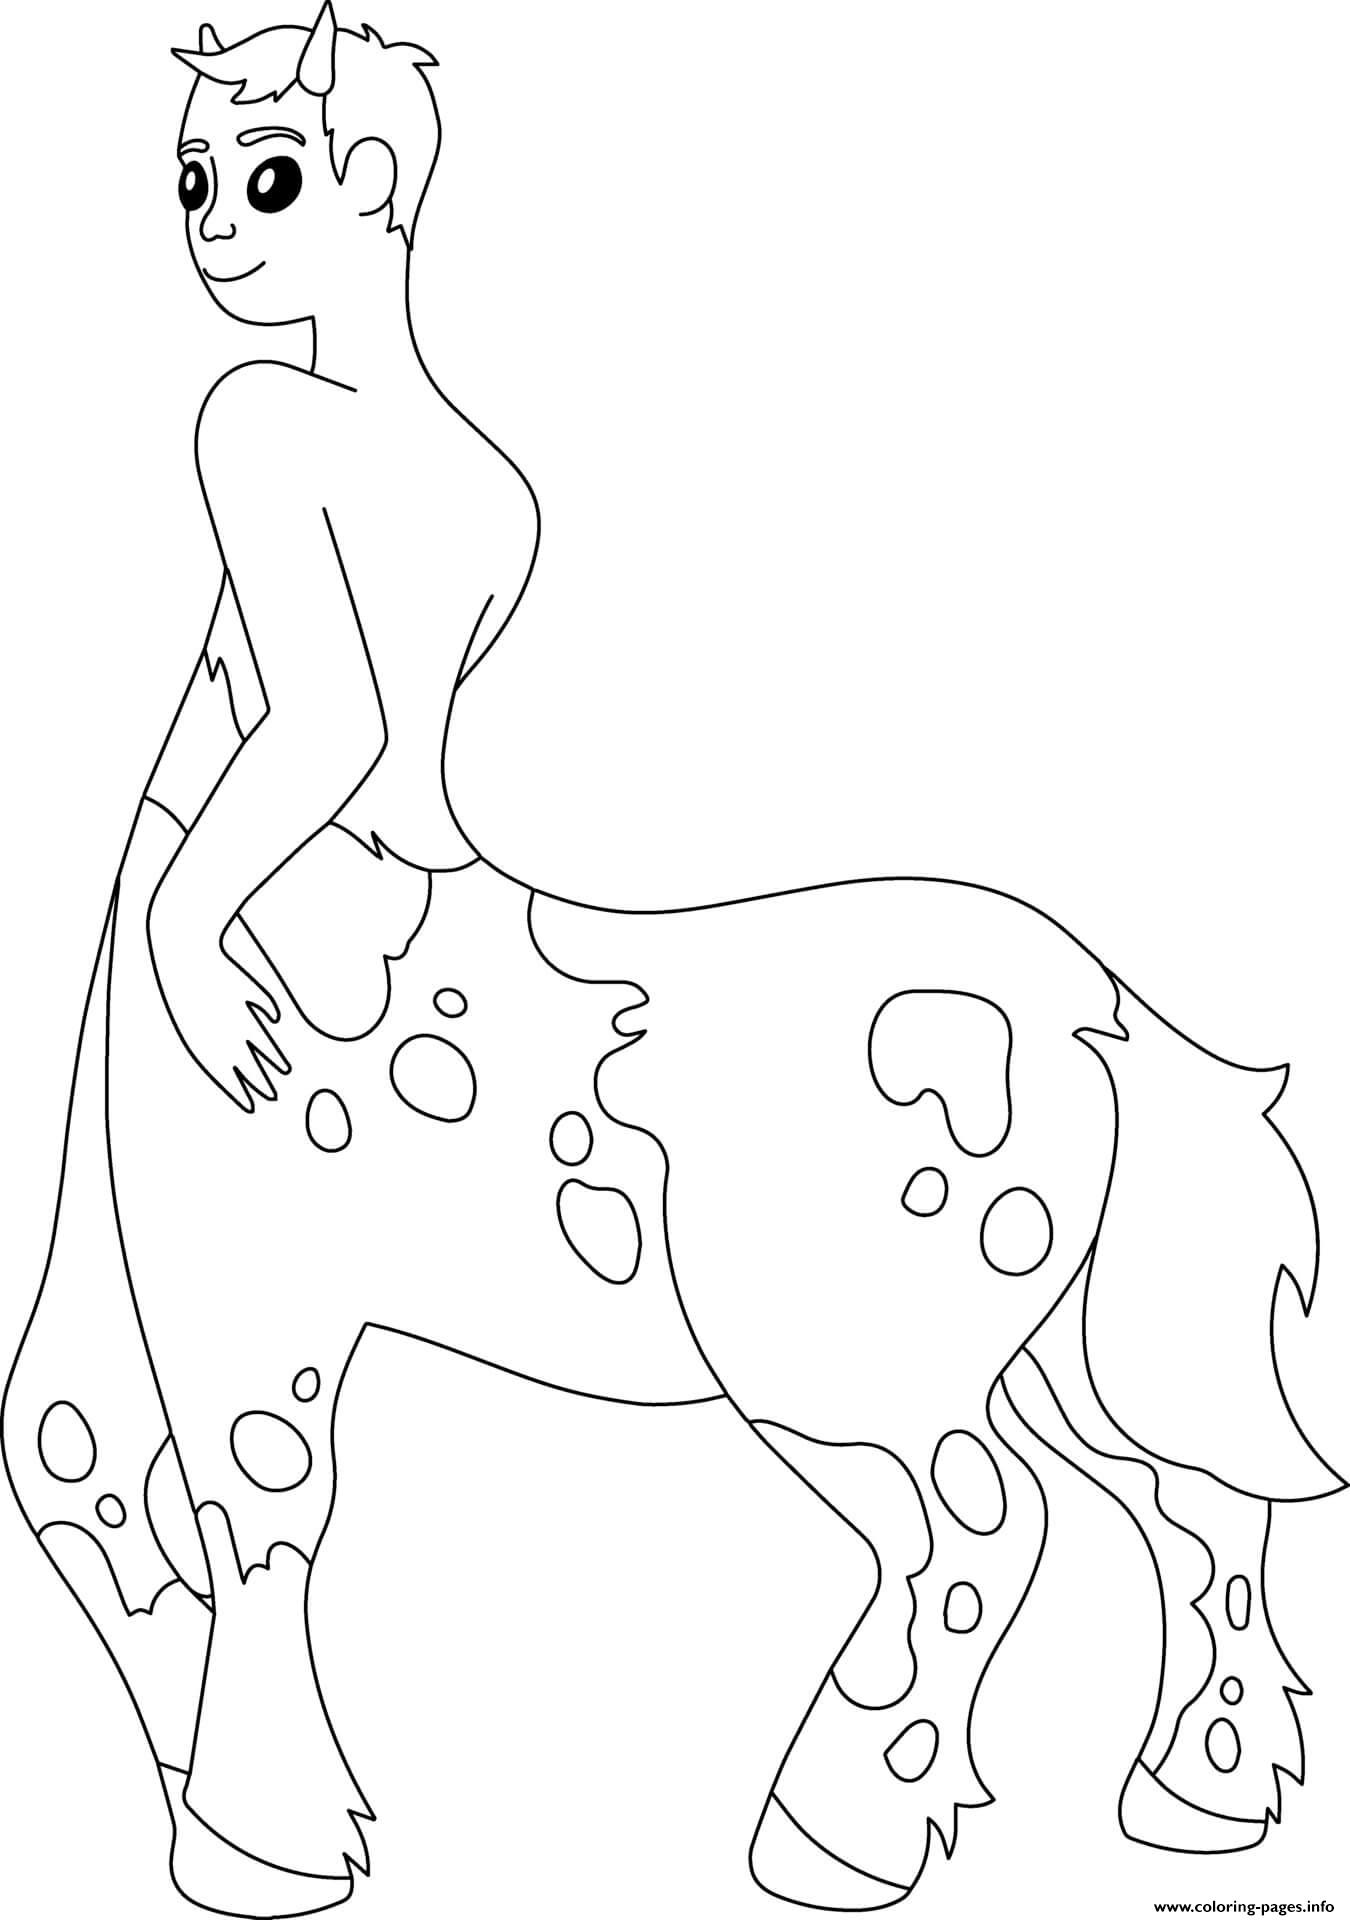 Centaur coloring